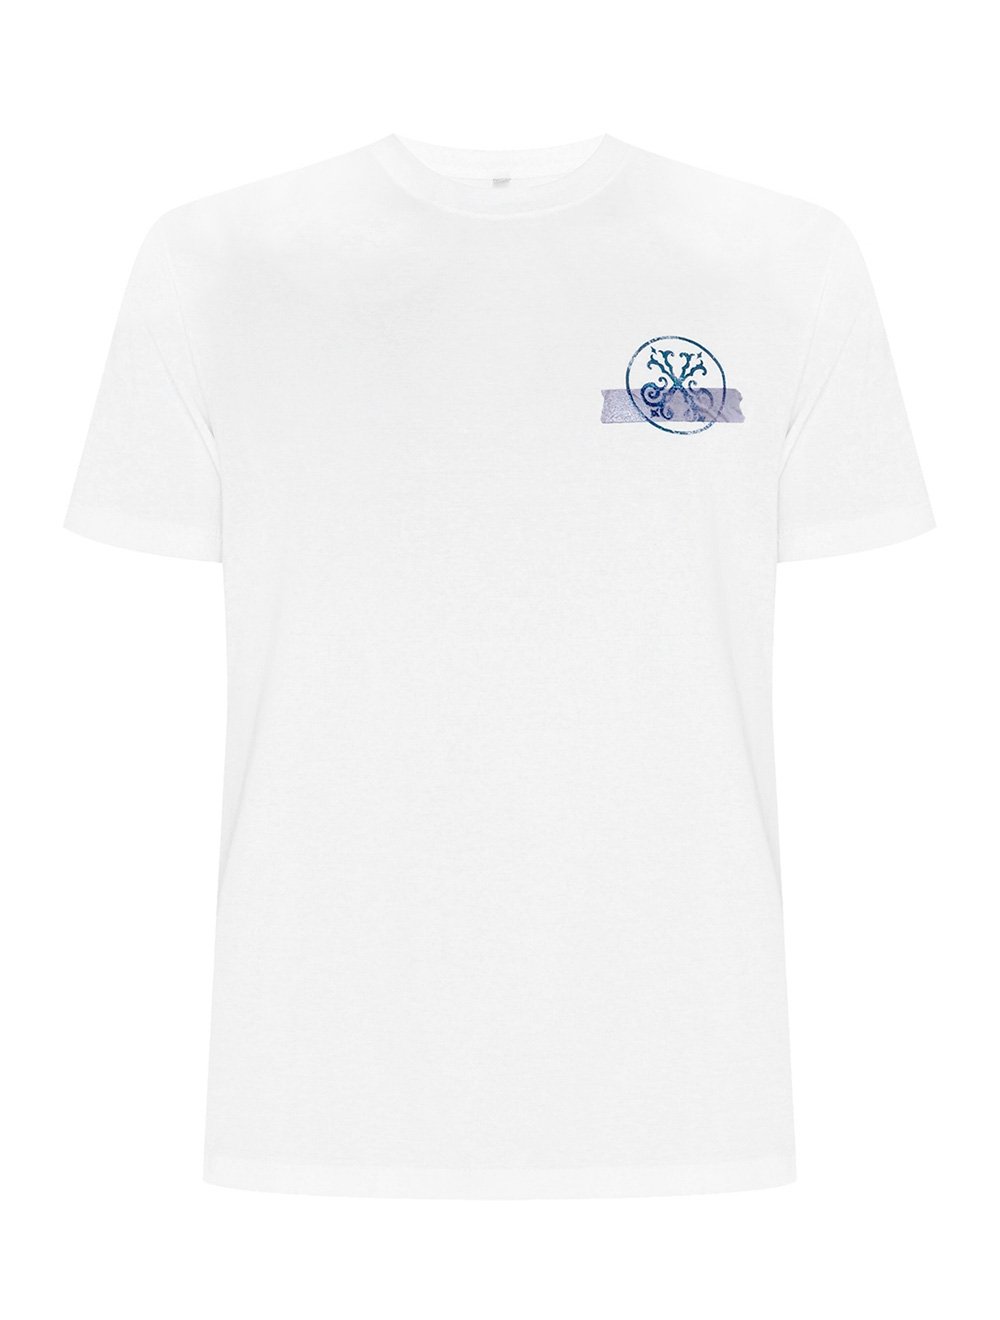 Camiseta John John Masculina Rg Taped Logo Branca